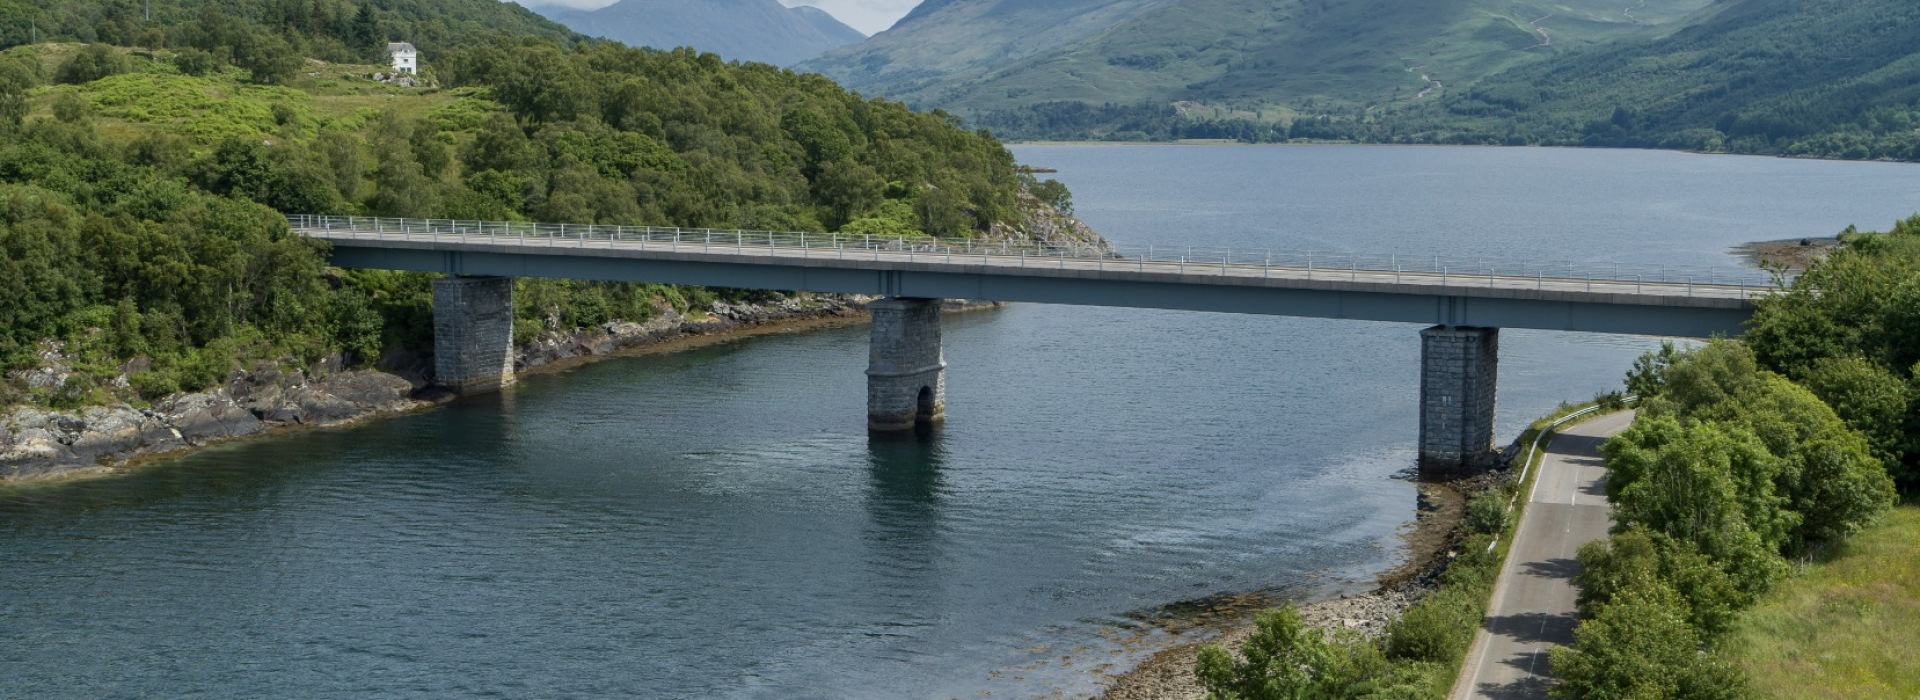 Creagan New Bridge, Loch Creran